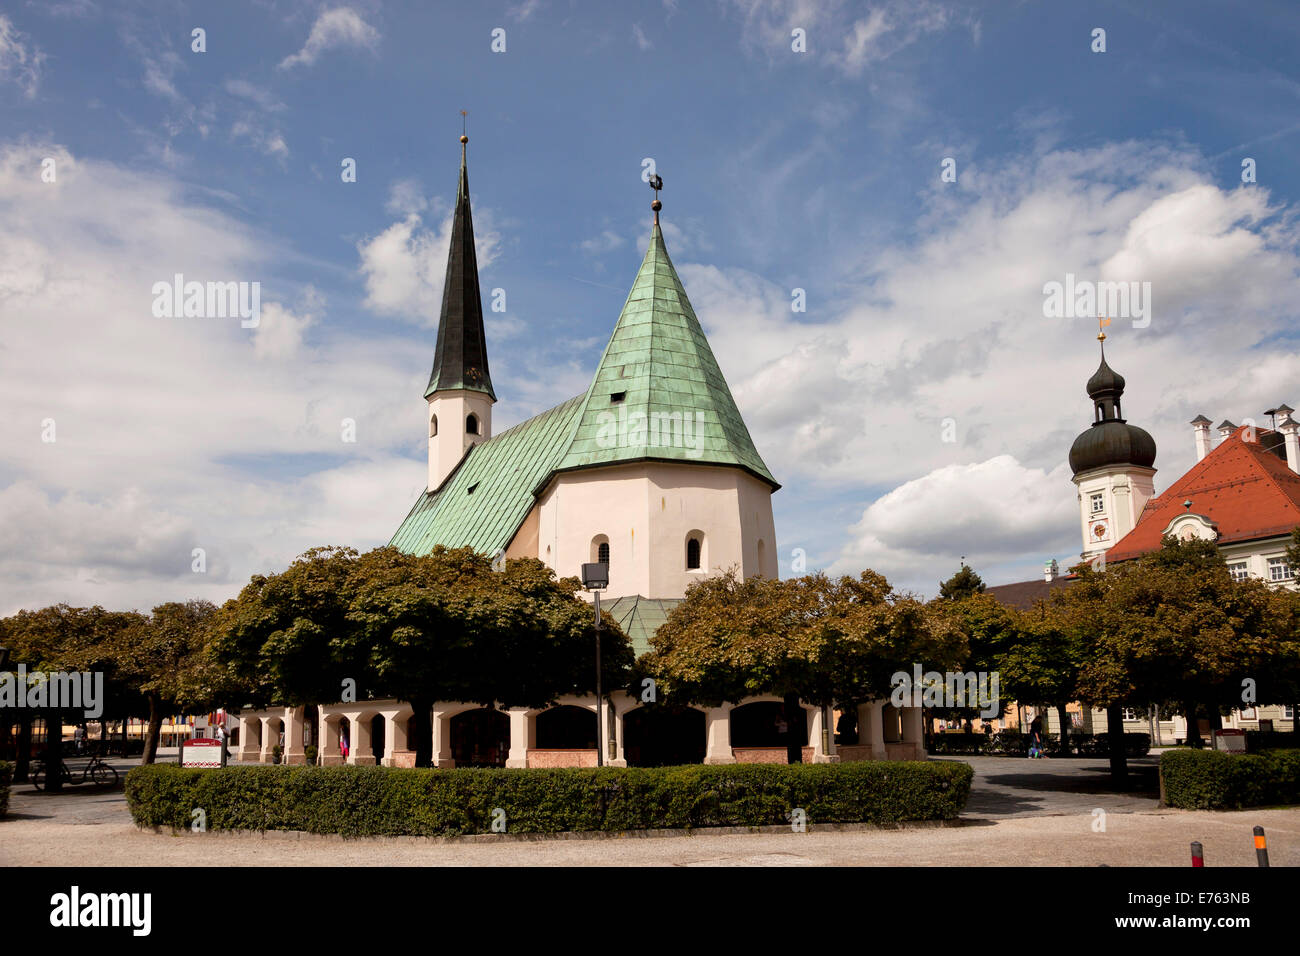 La chapelle de la grâce et de l'hôtel de ville sur la place Kapellplatz dans Altoetting, Upper-Bavaria, Bavaria, Germany, Europe Banque D'Images